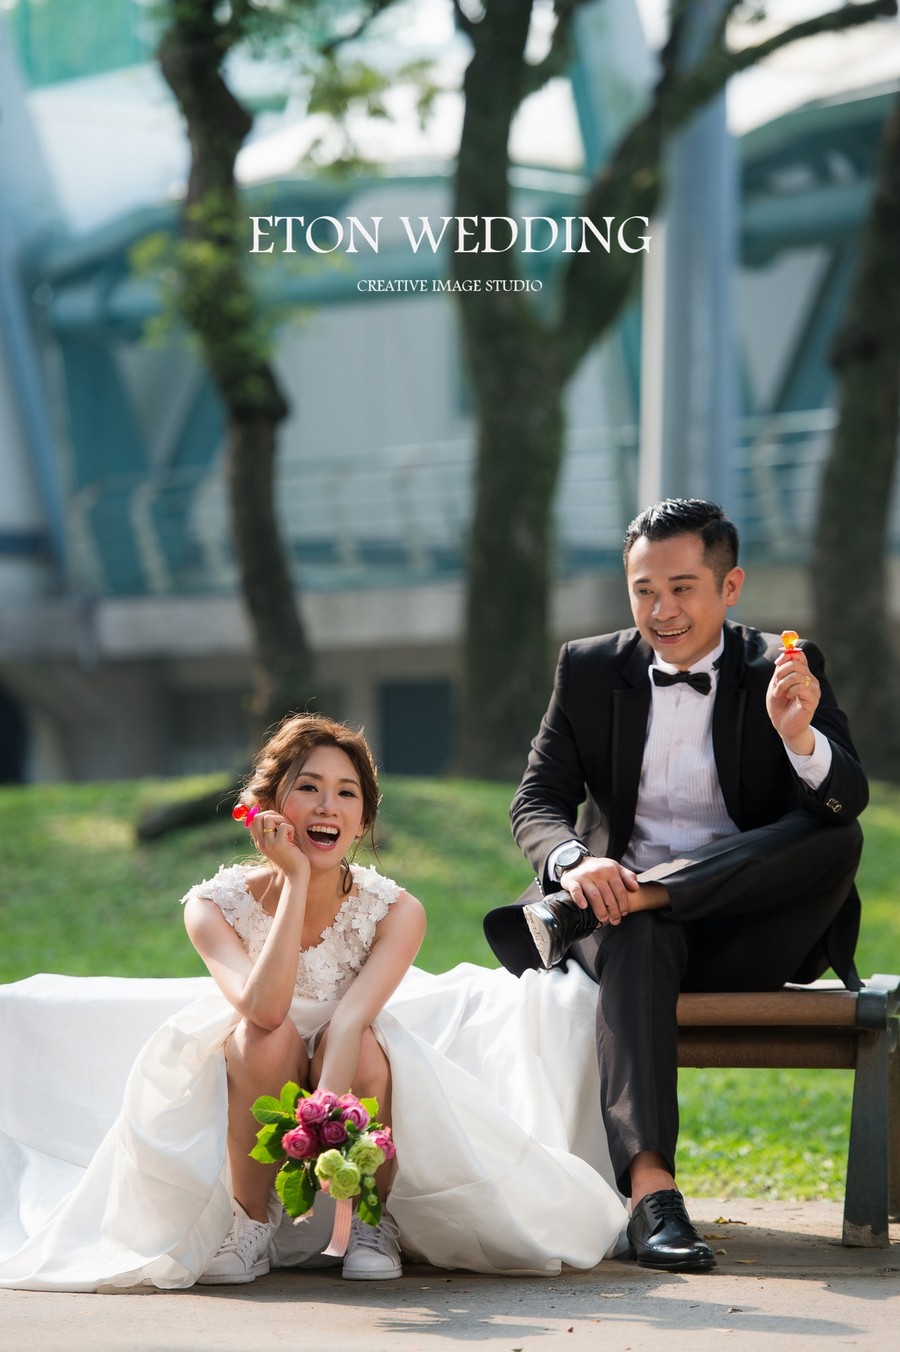 婚紗照推薦 台北,婚紗攝影推薦 台北,自助婚紗 台北,小清新婚紗 台北